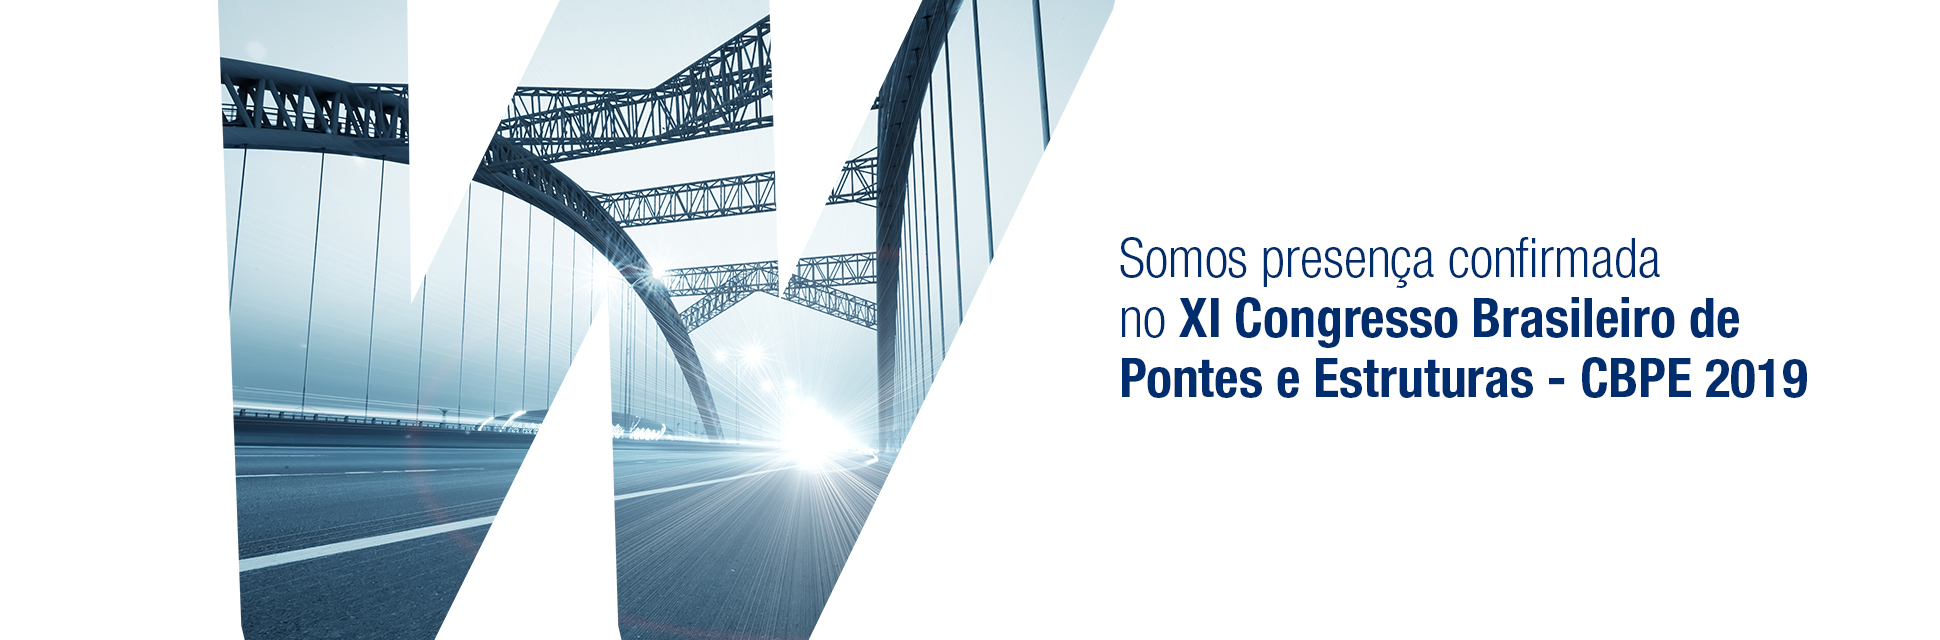 Participe: XI Congresso Brasileiro de Pontes e Estruturas - CBPE 2019